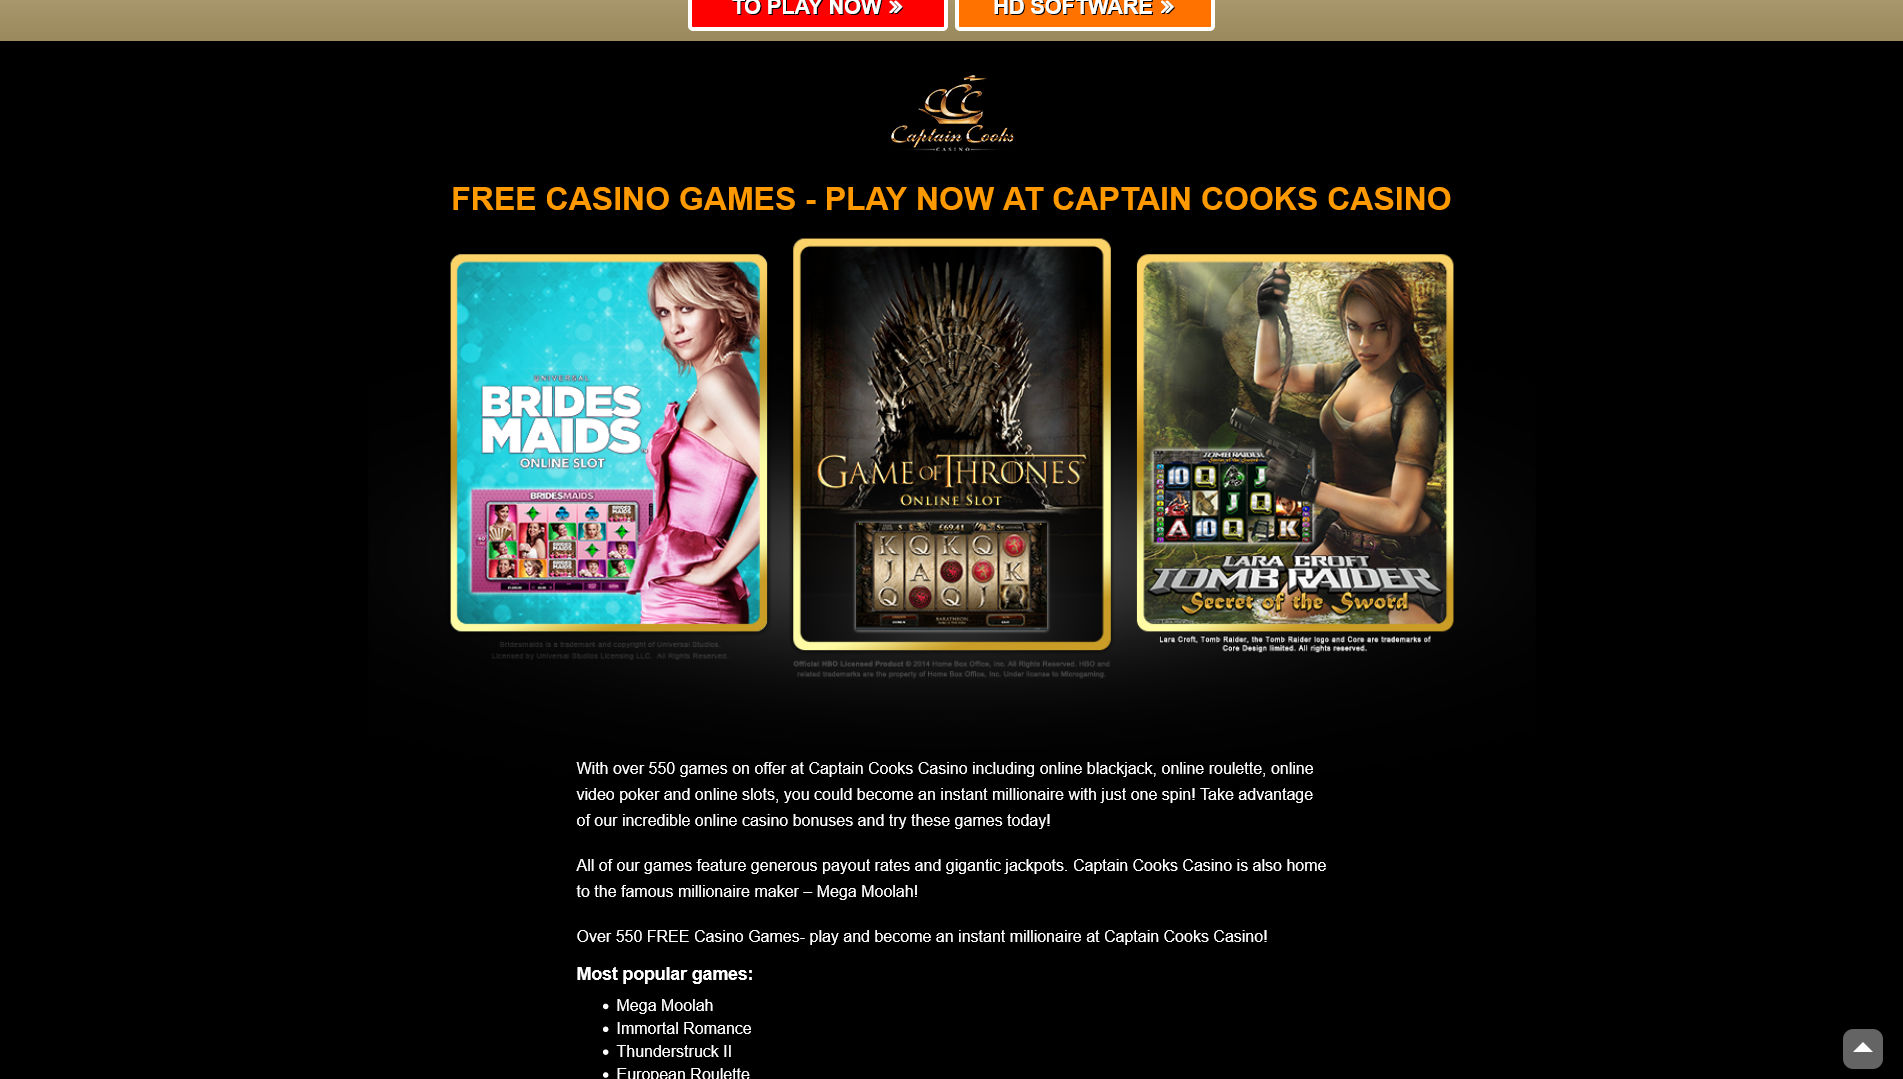 Captain Cooks EU Casino Games